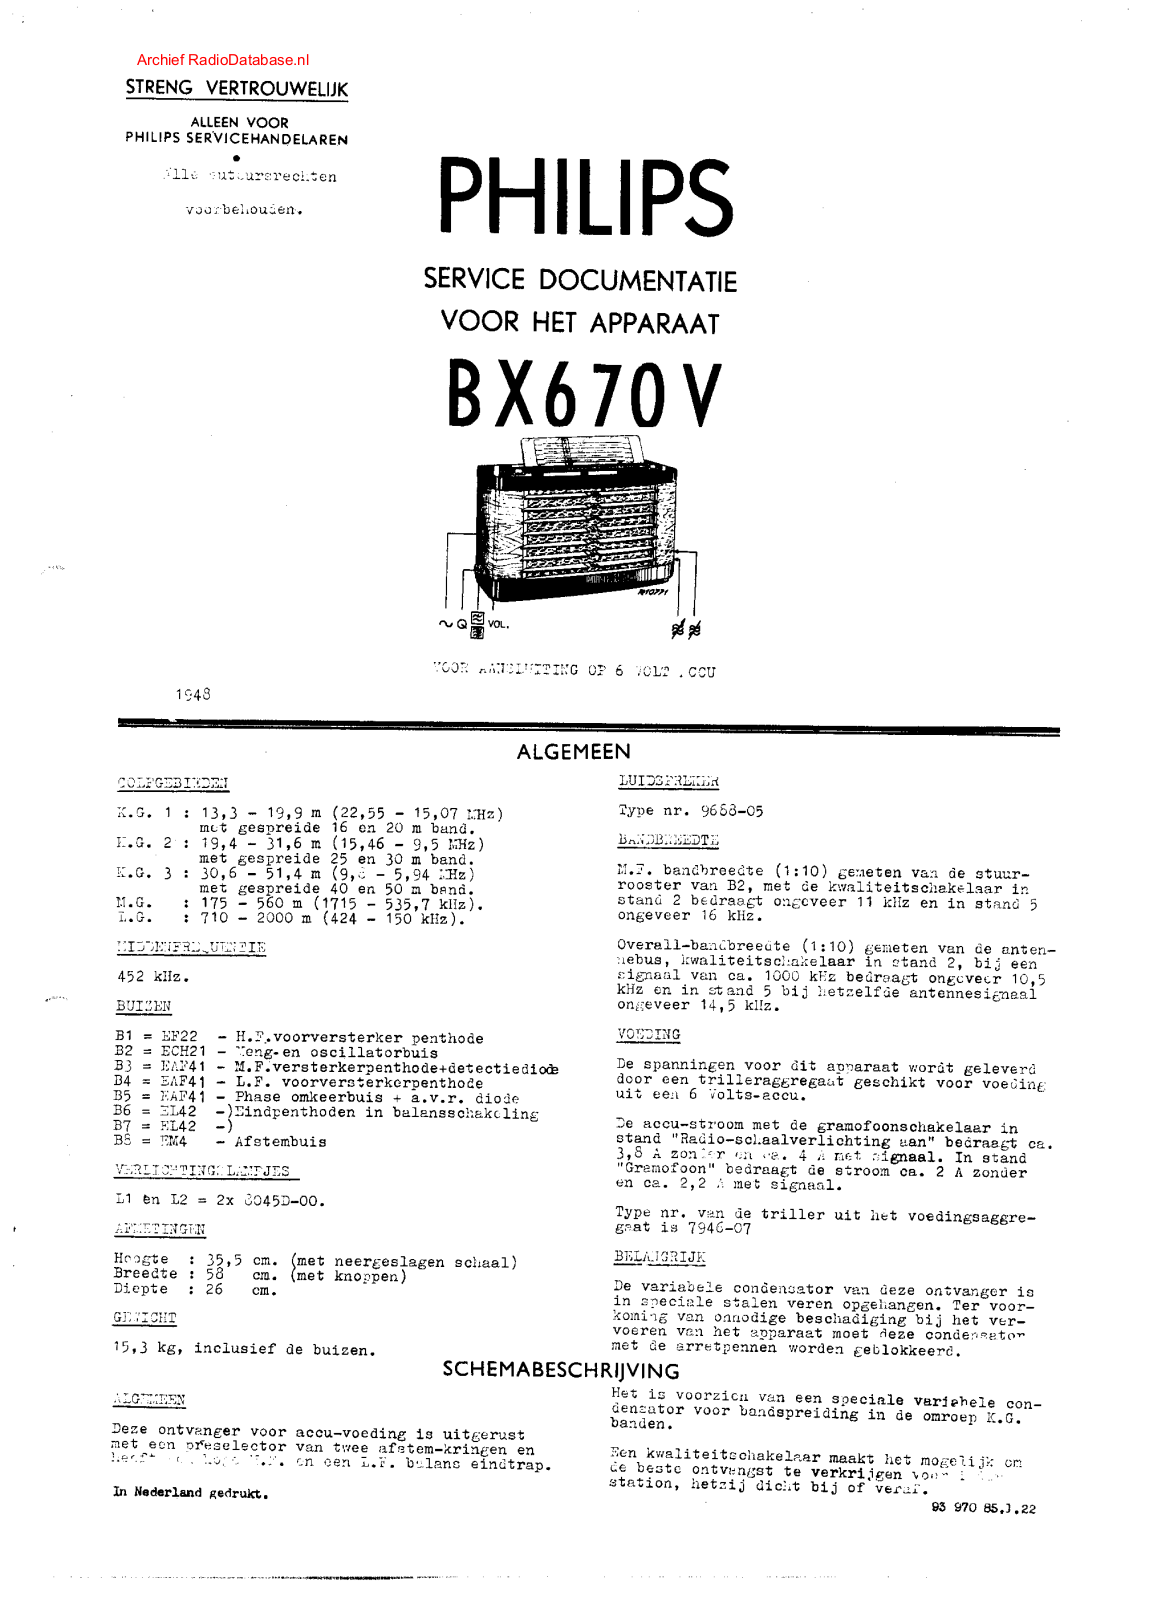 Philips BX670V Schematic